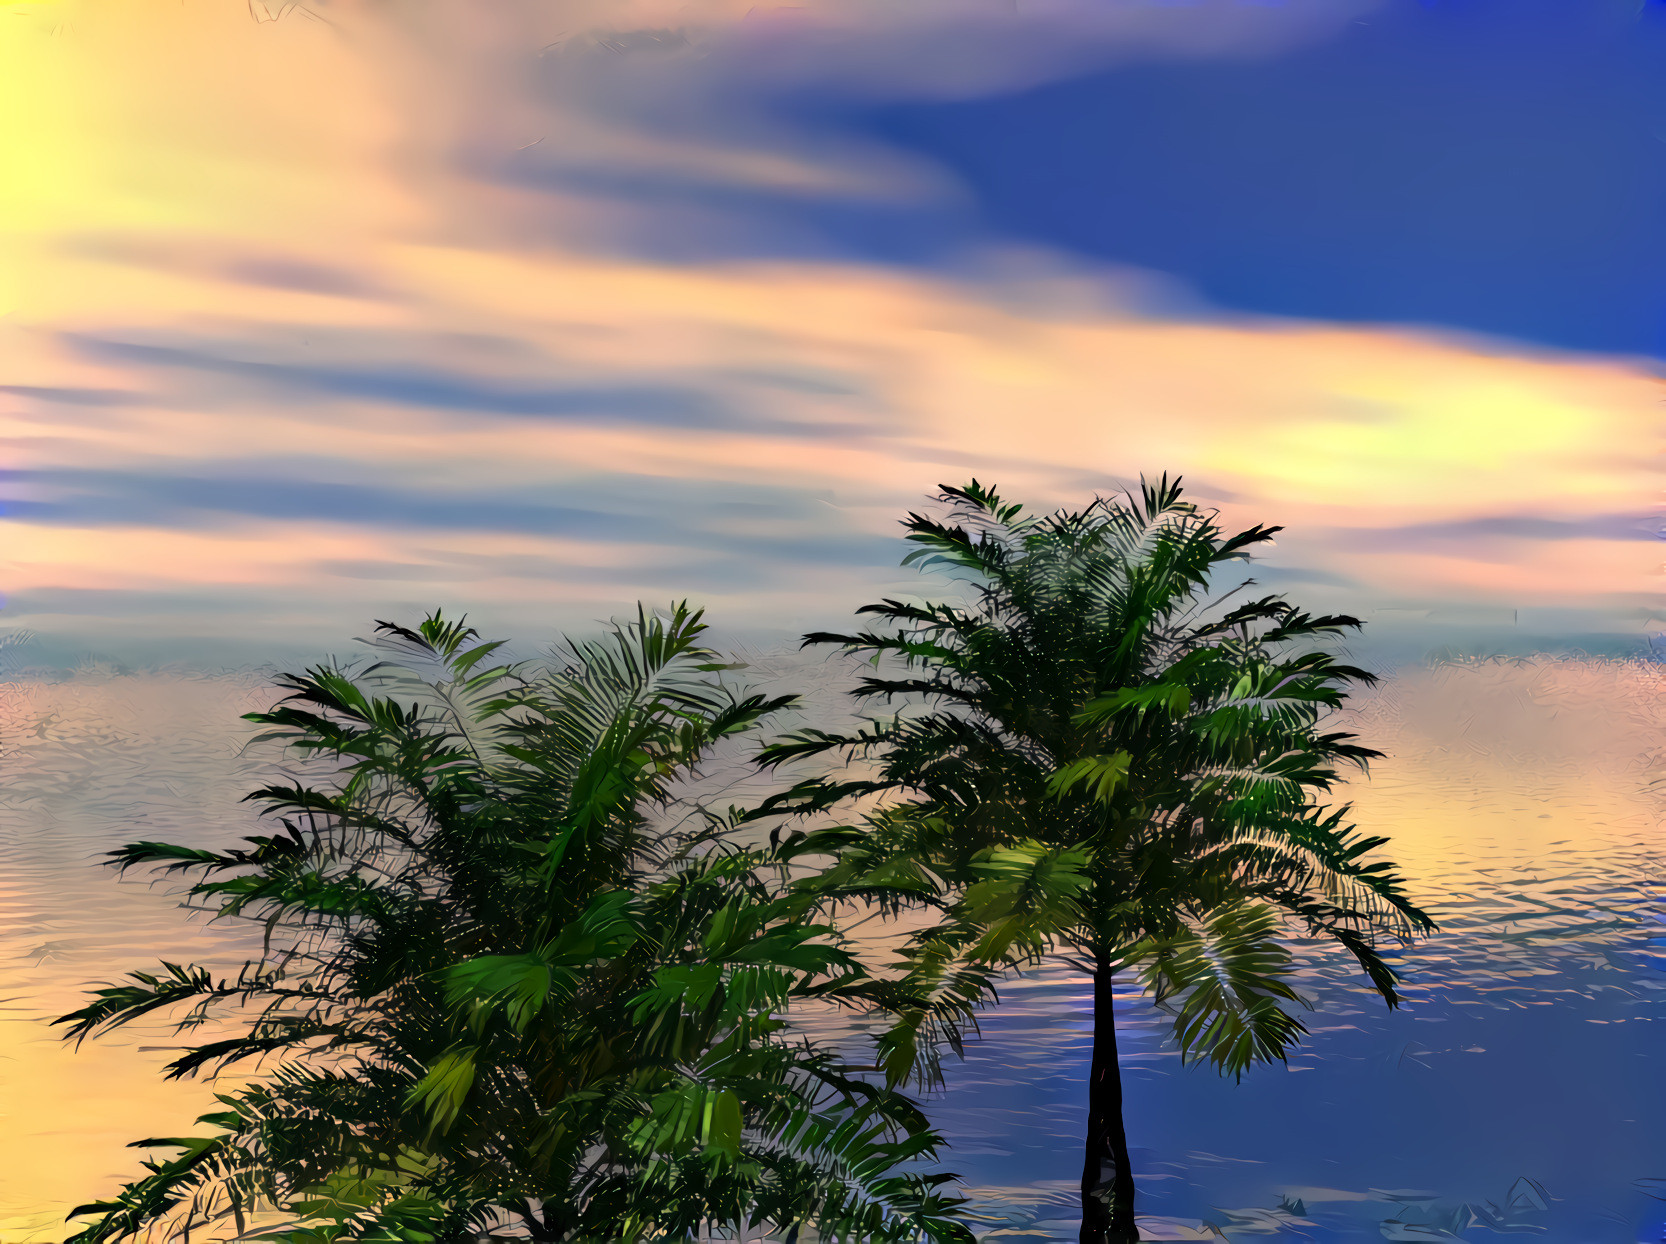 Sea, Sky, Palm Trees